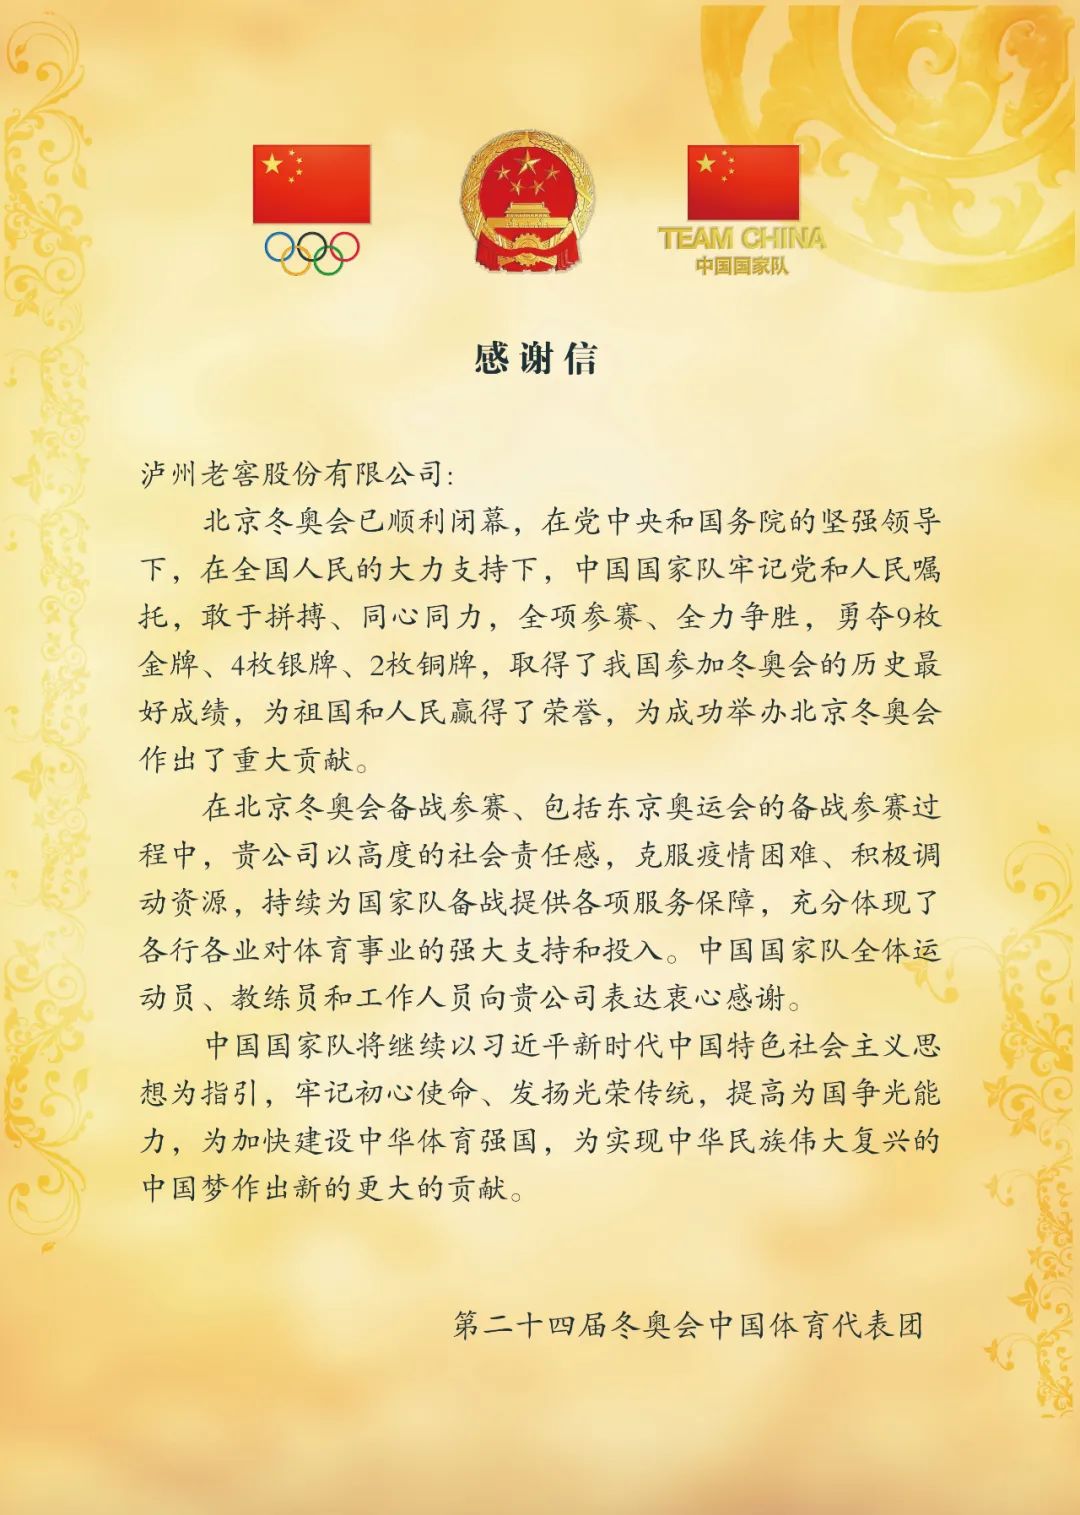 “冬奥中国体育代表团为泸州老窖助力体育点赞